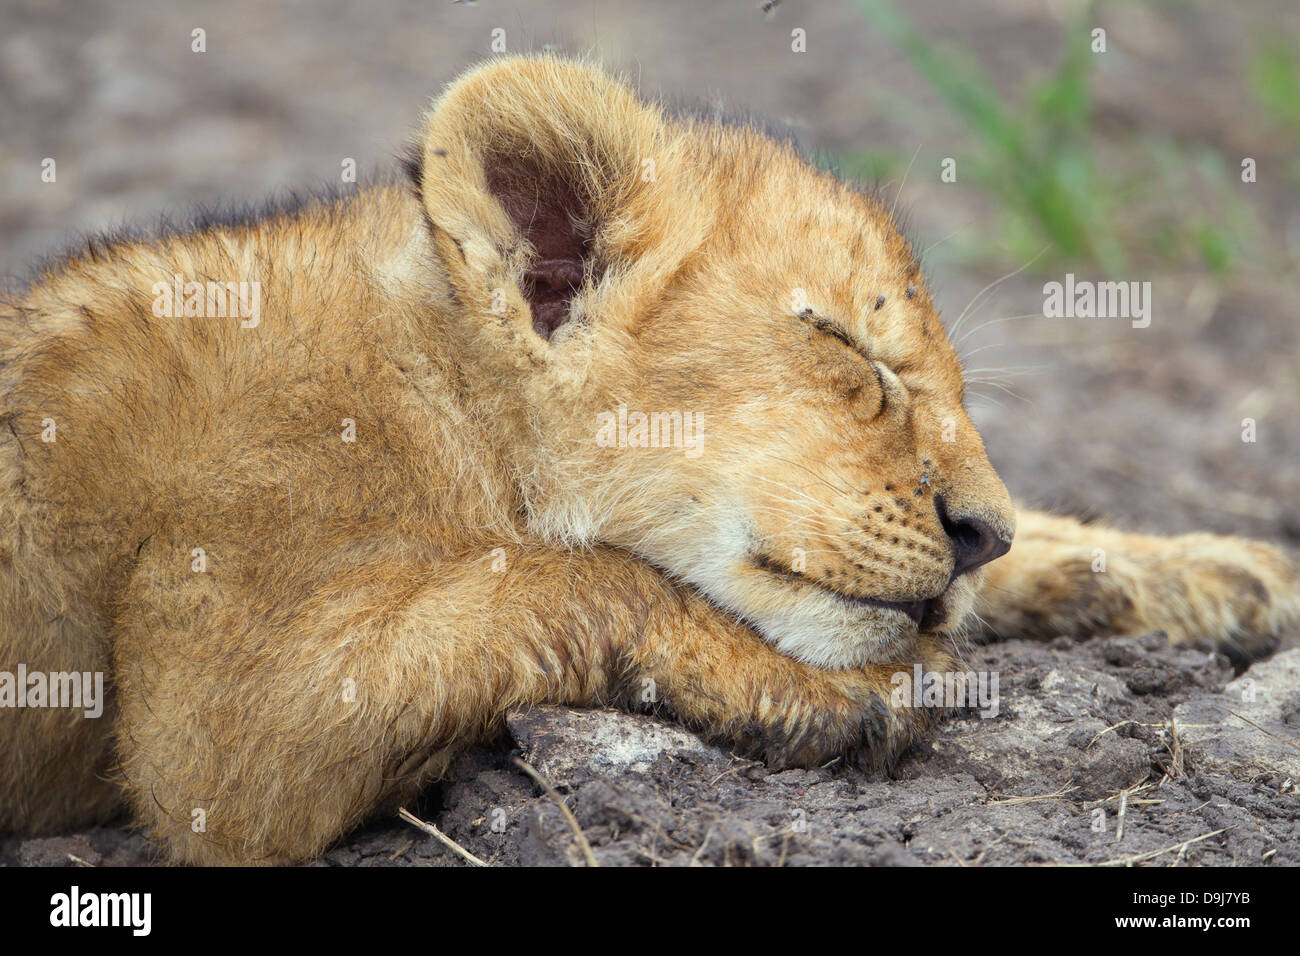 Lion cub close-up, Masai Mara, Kenya Banque D'Images